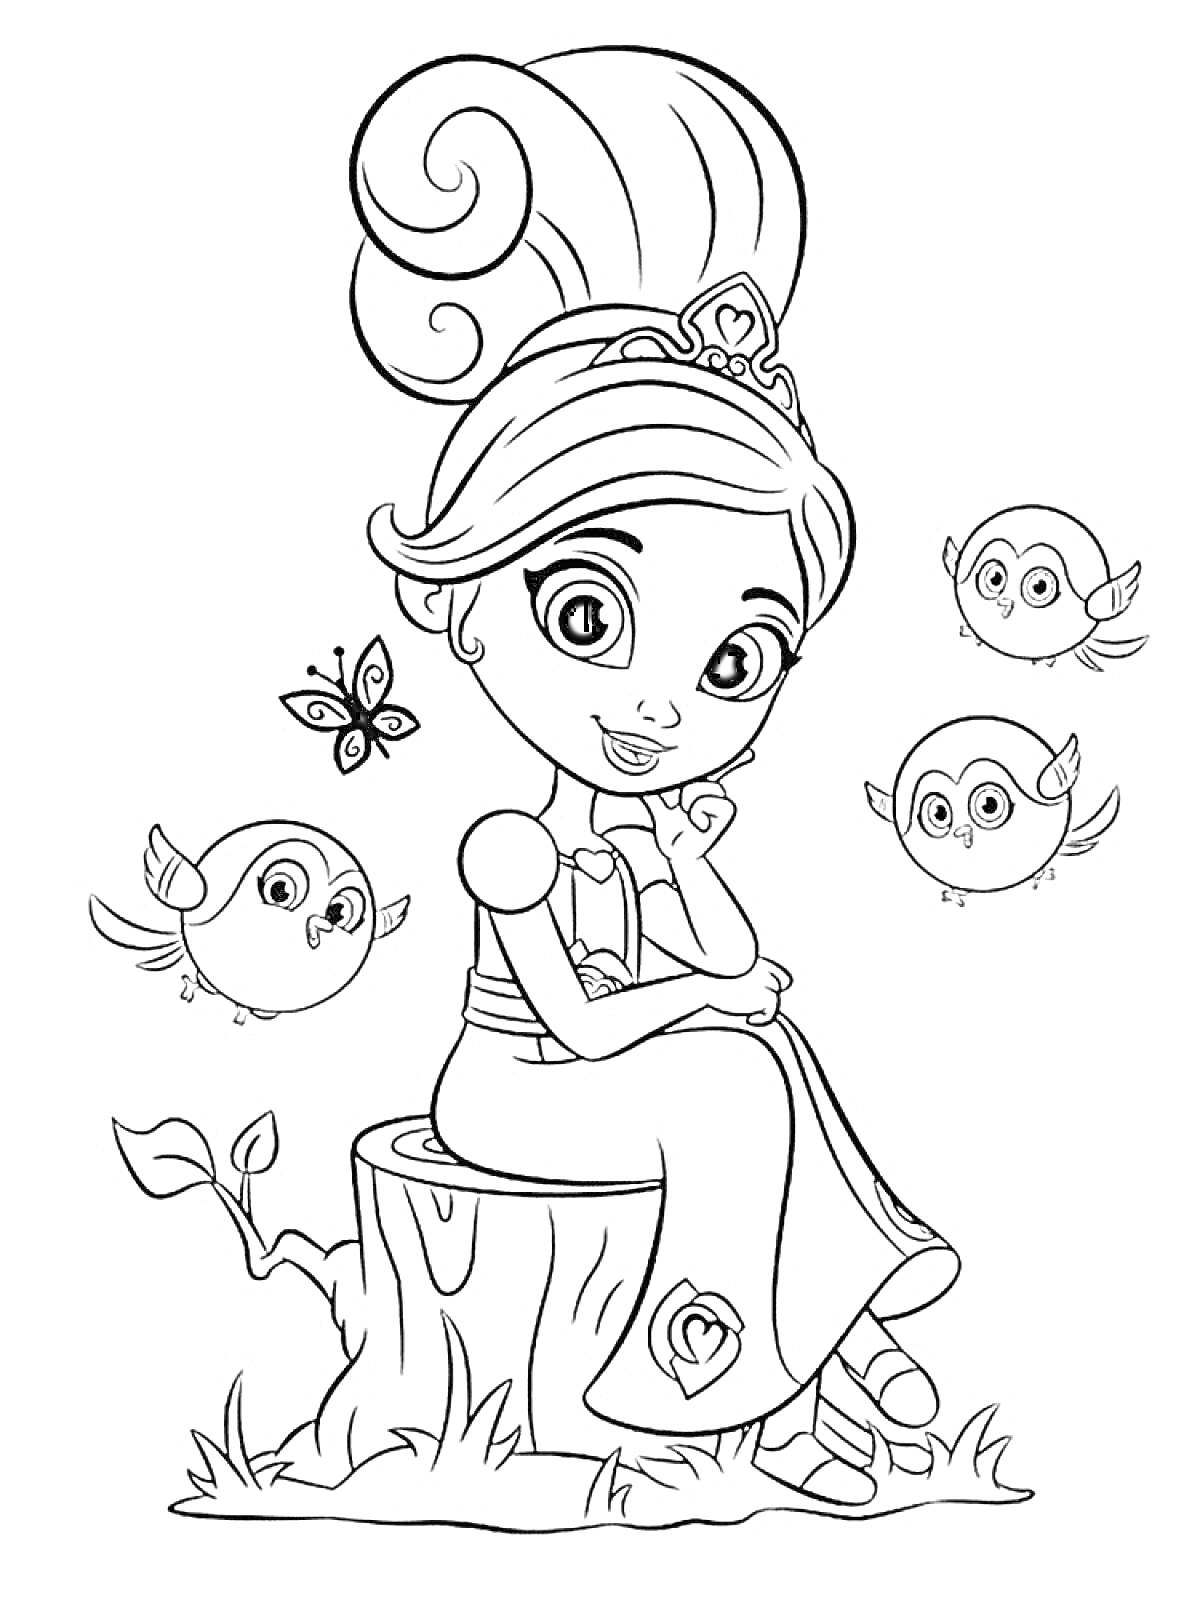 Раскраска Нелла принцесса рыцарь, сидящая на пеньке, с тремя совятами и бабочкой